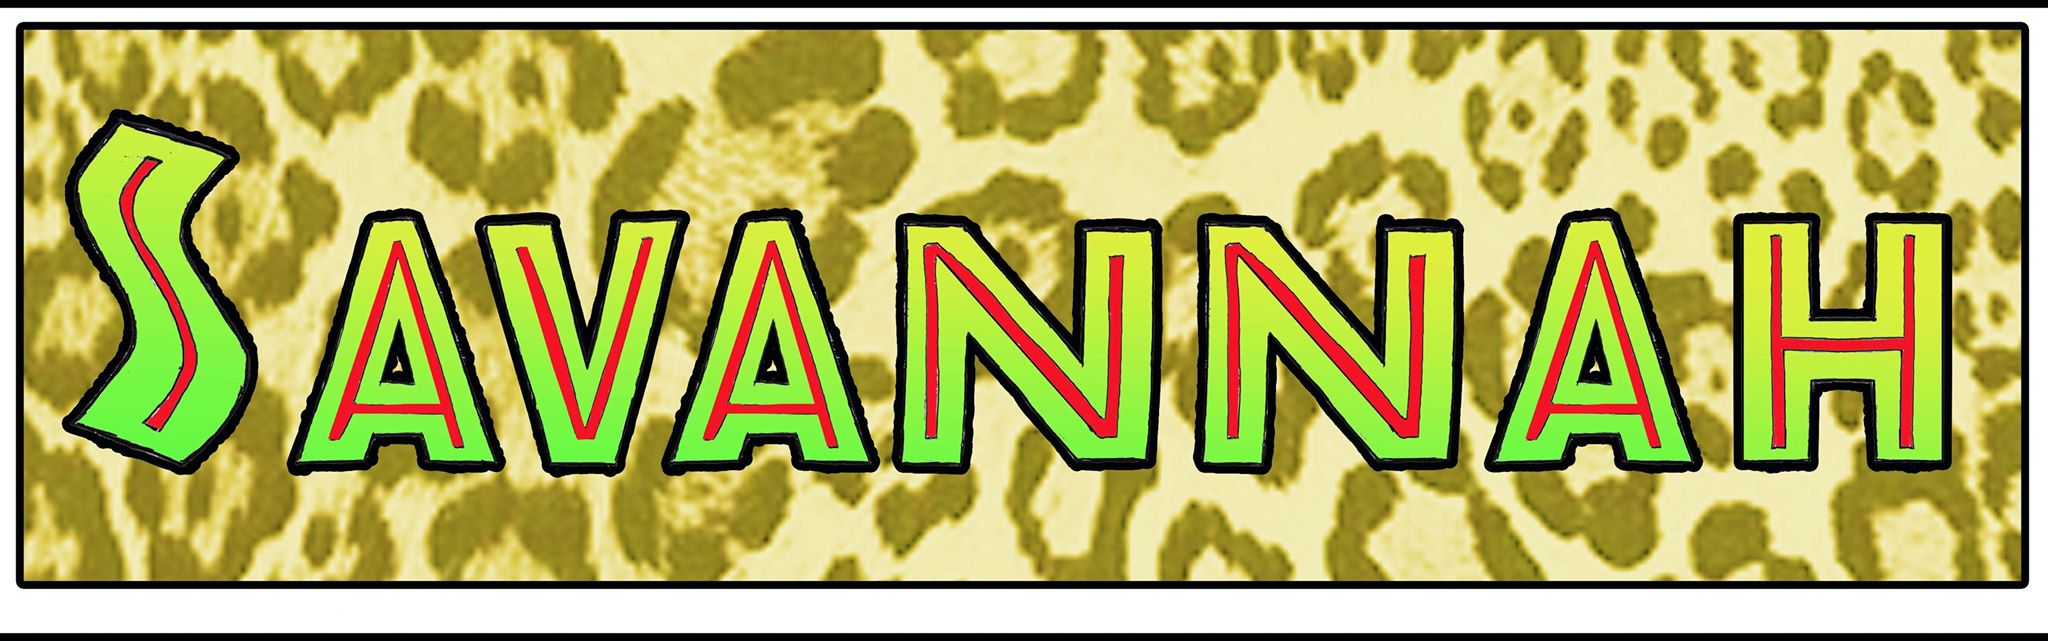 savannah logo.jpg